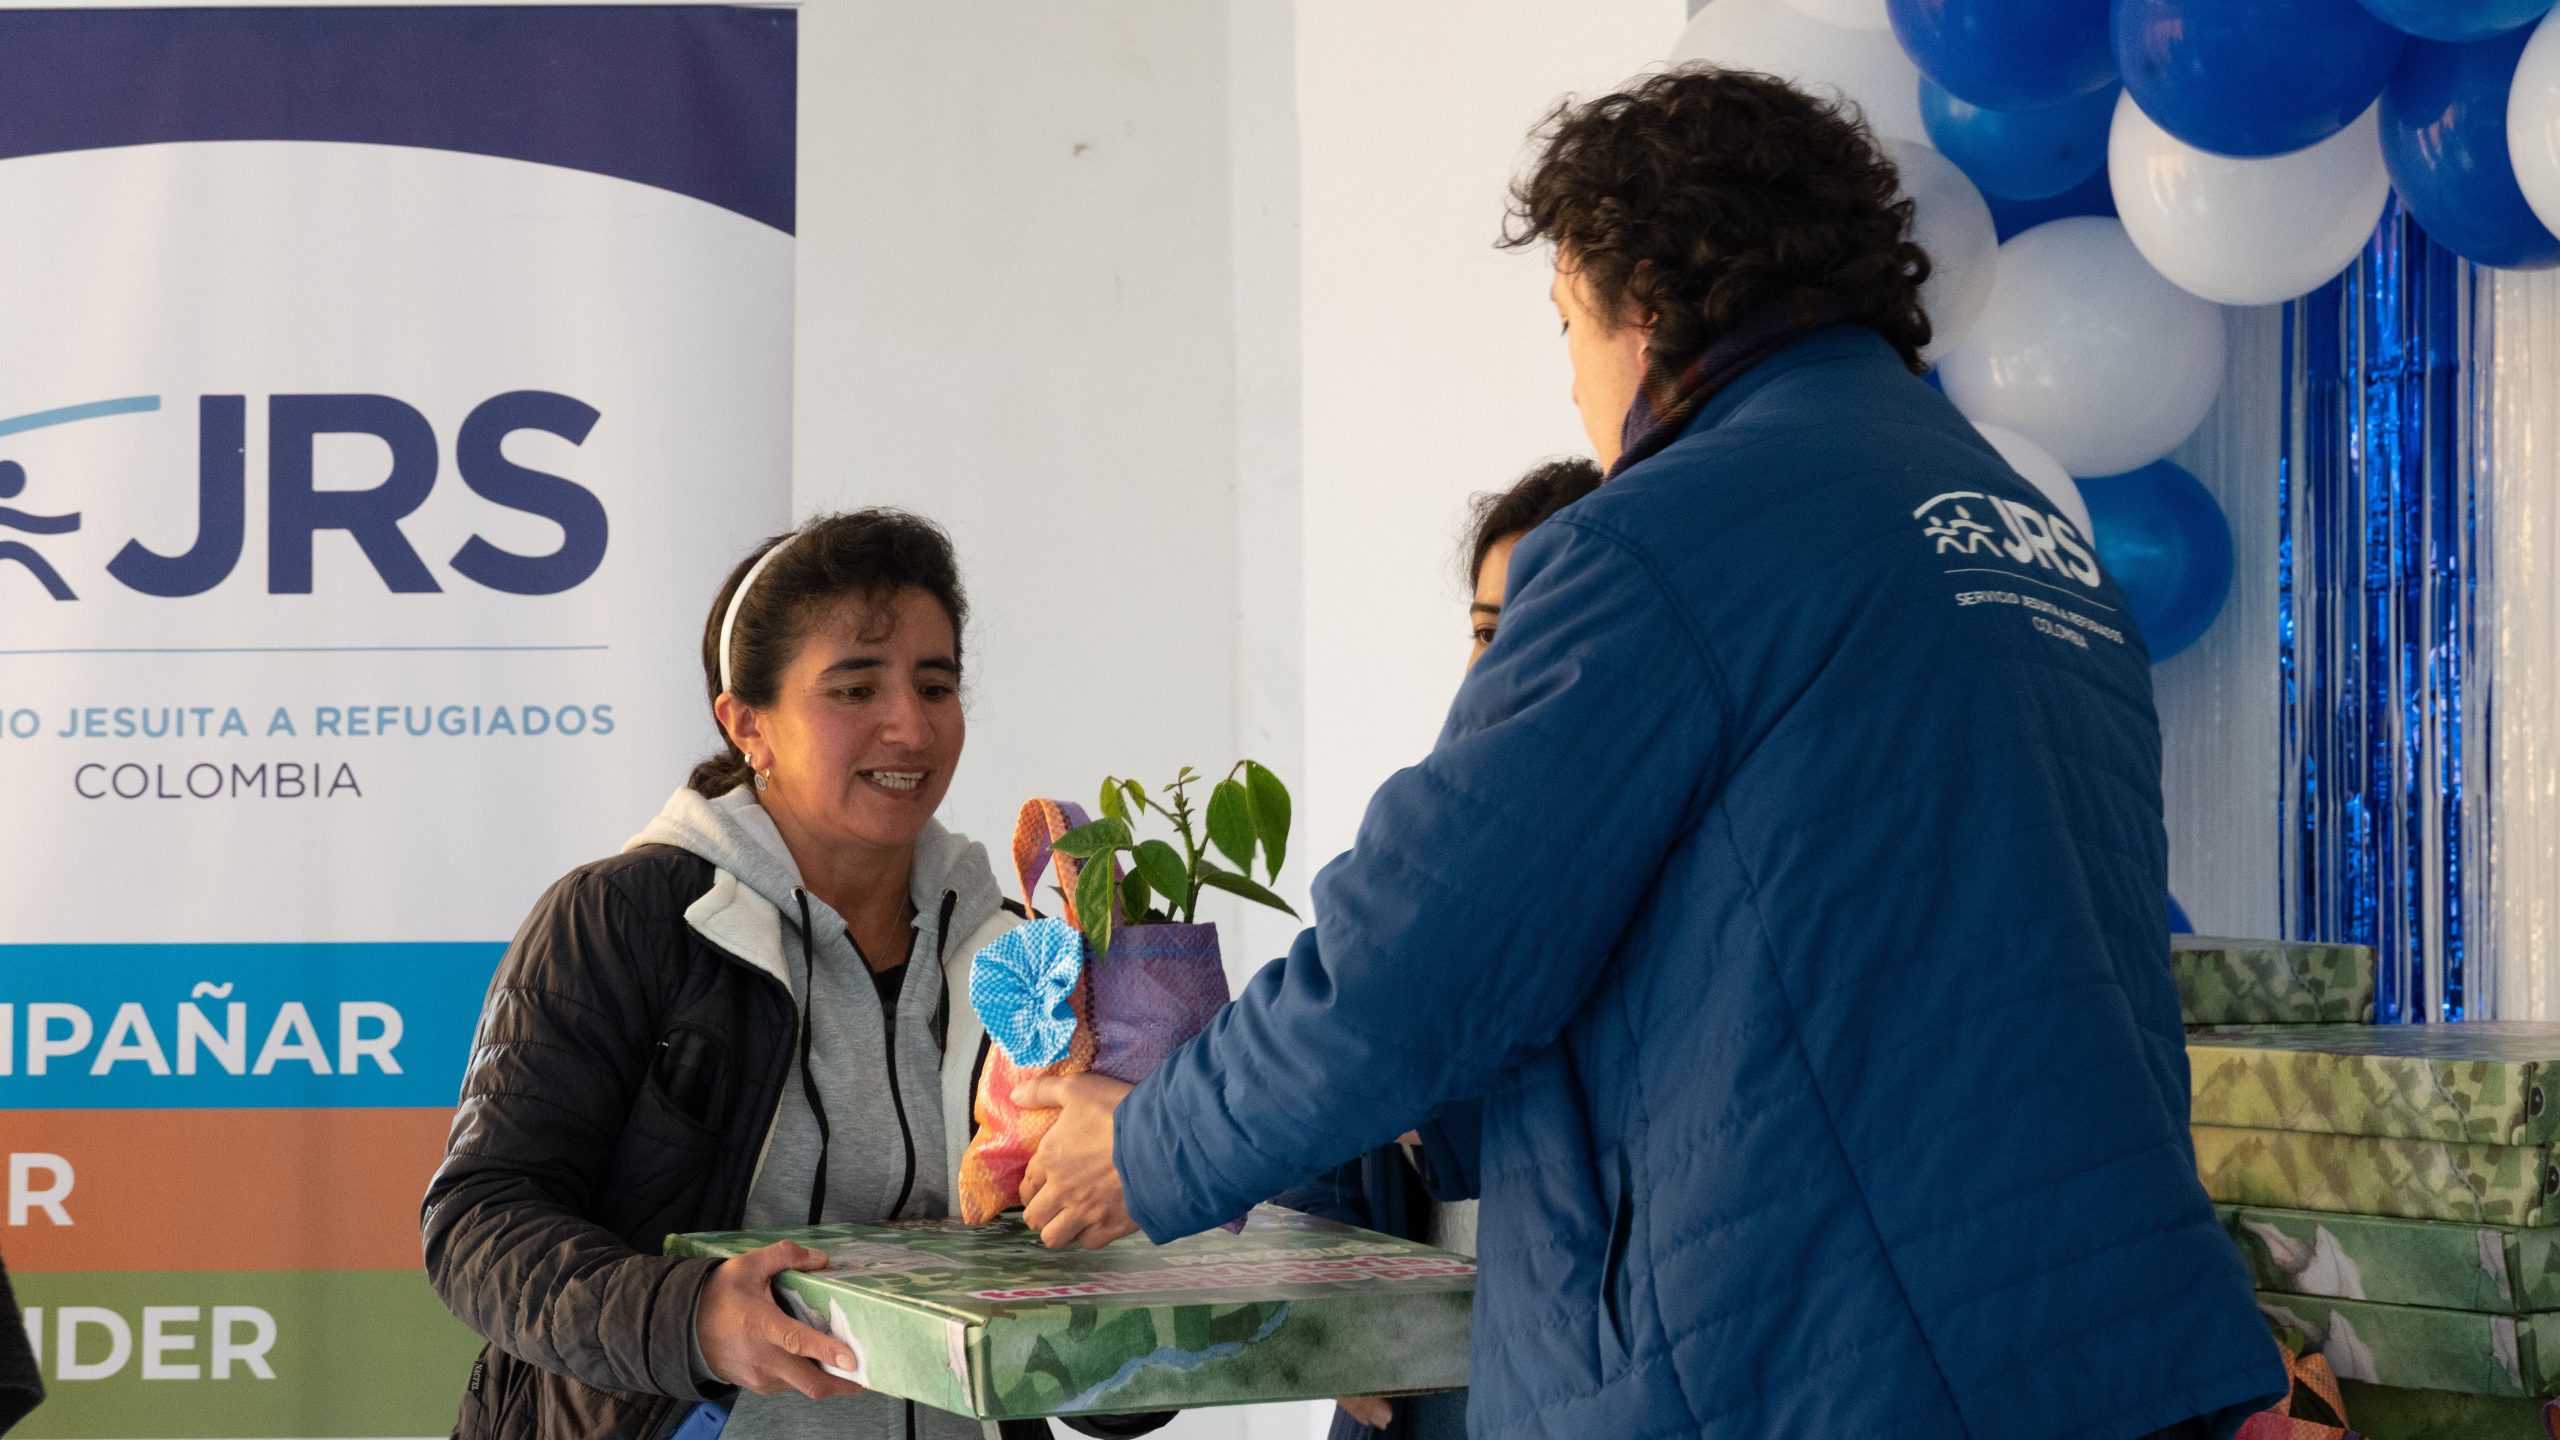 Servicio Jesuita a Refugiados – JRS Colombia1